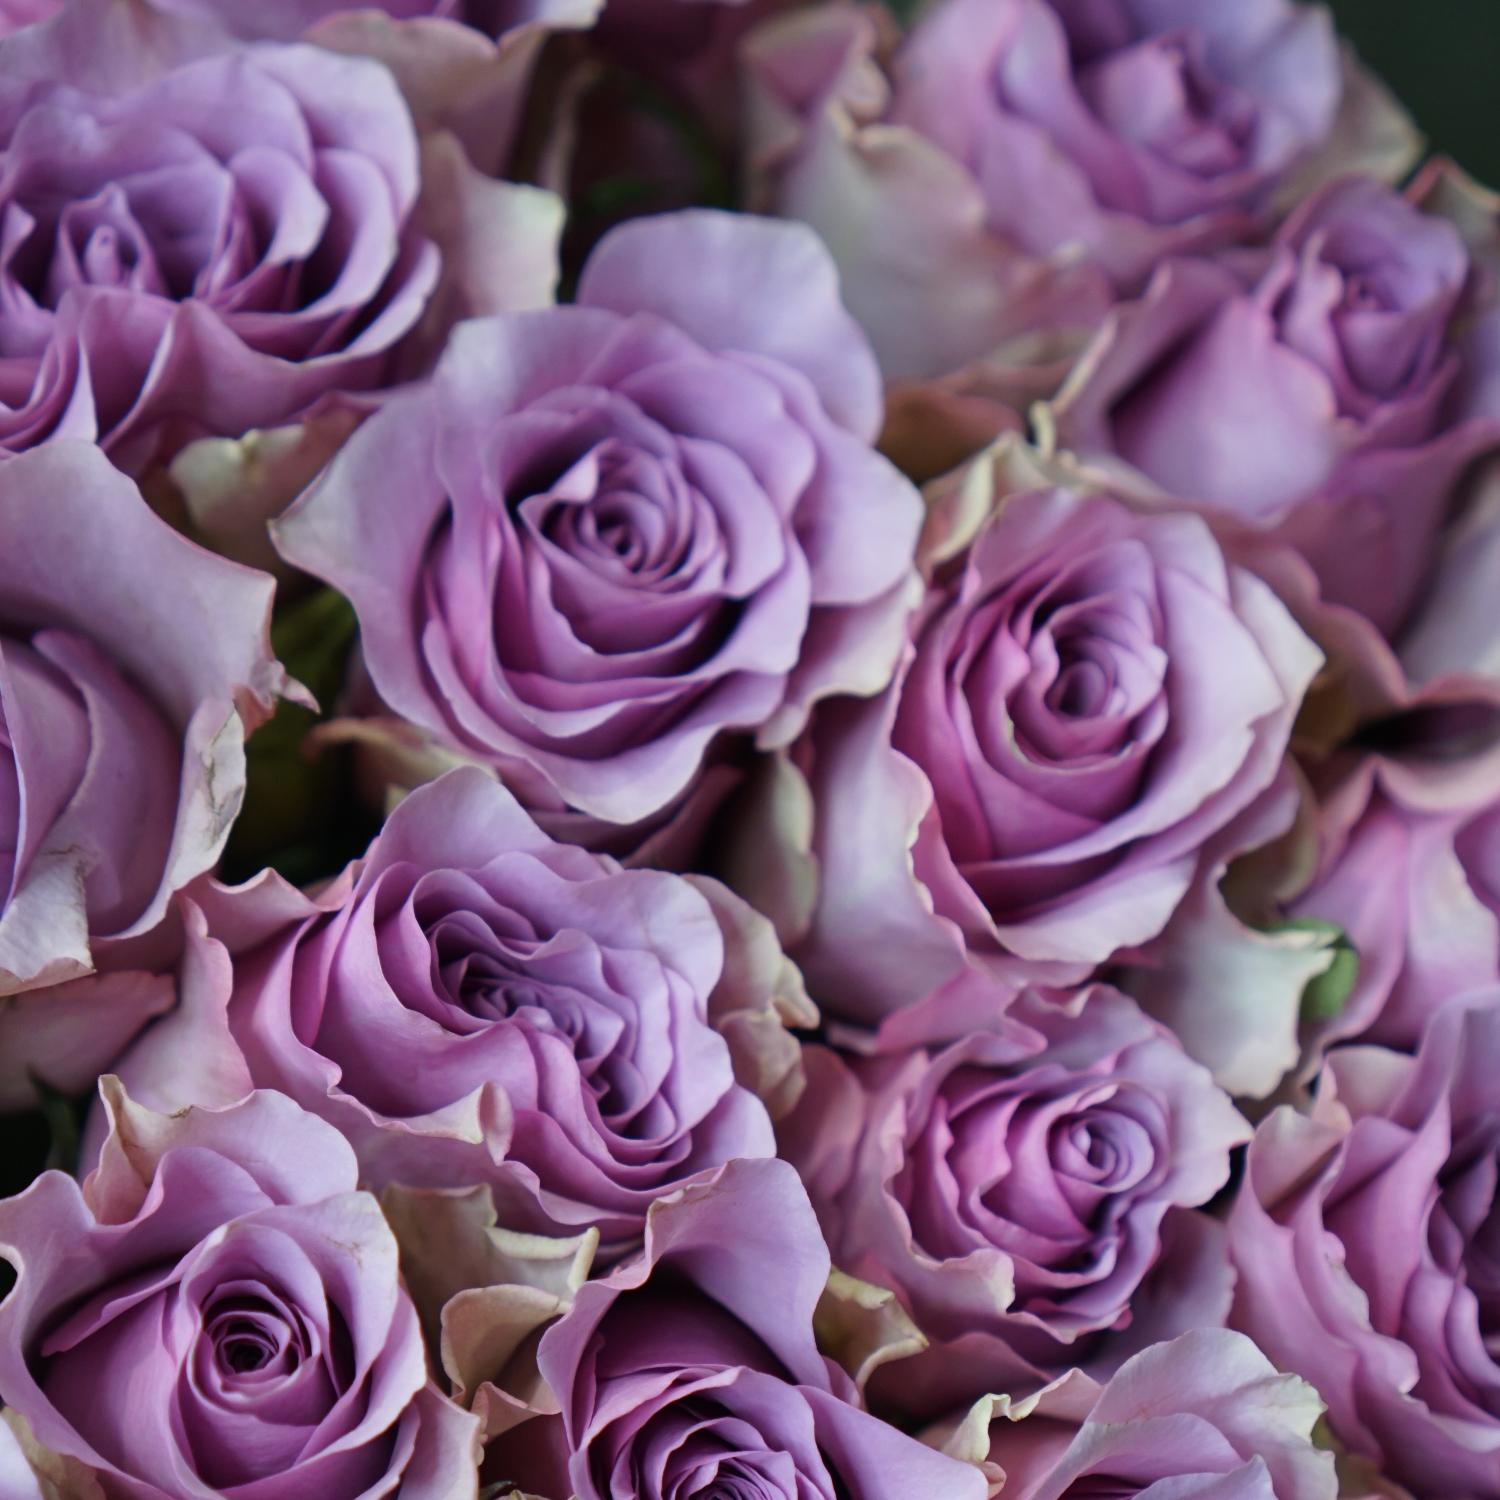 Найтингейл роза фото доставка цветов в щучье курганской области